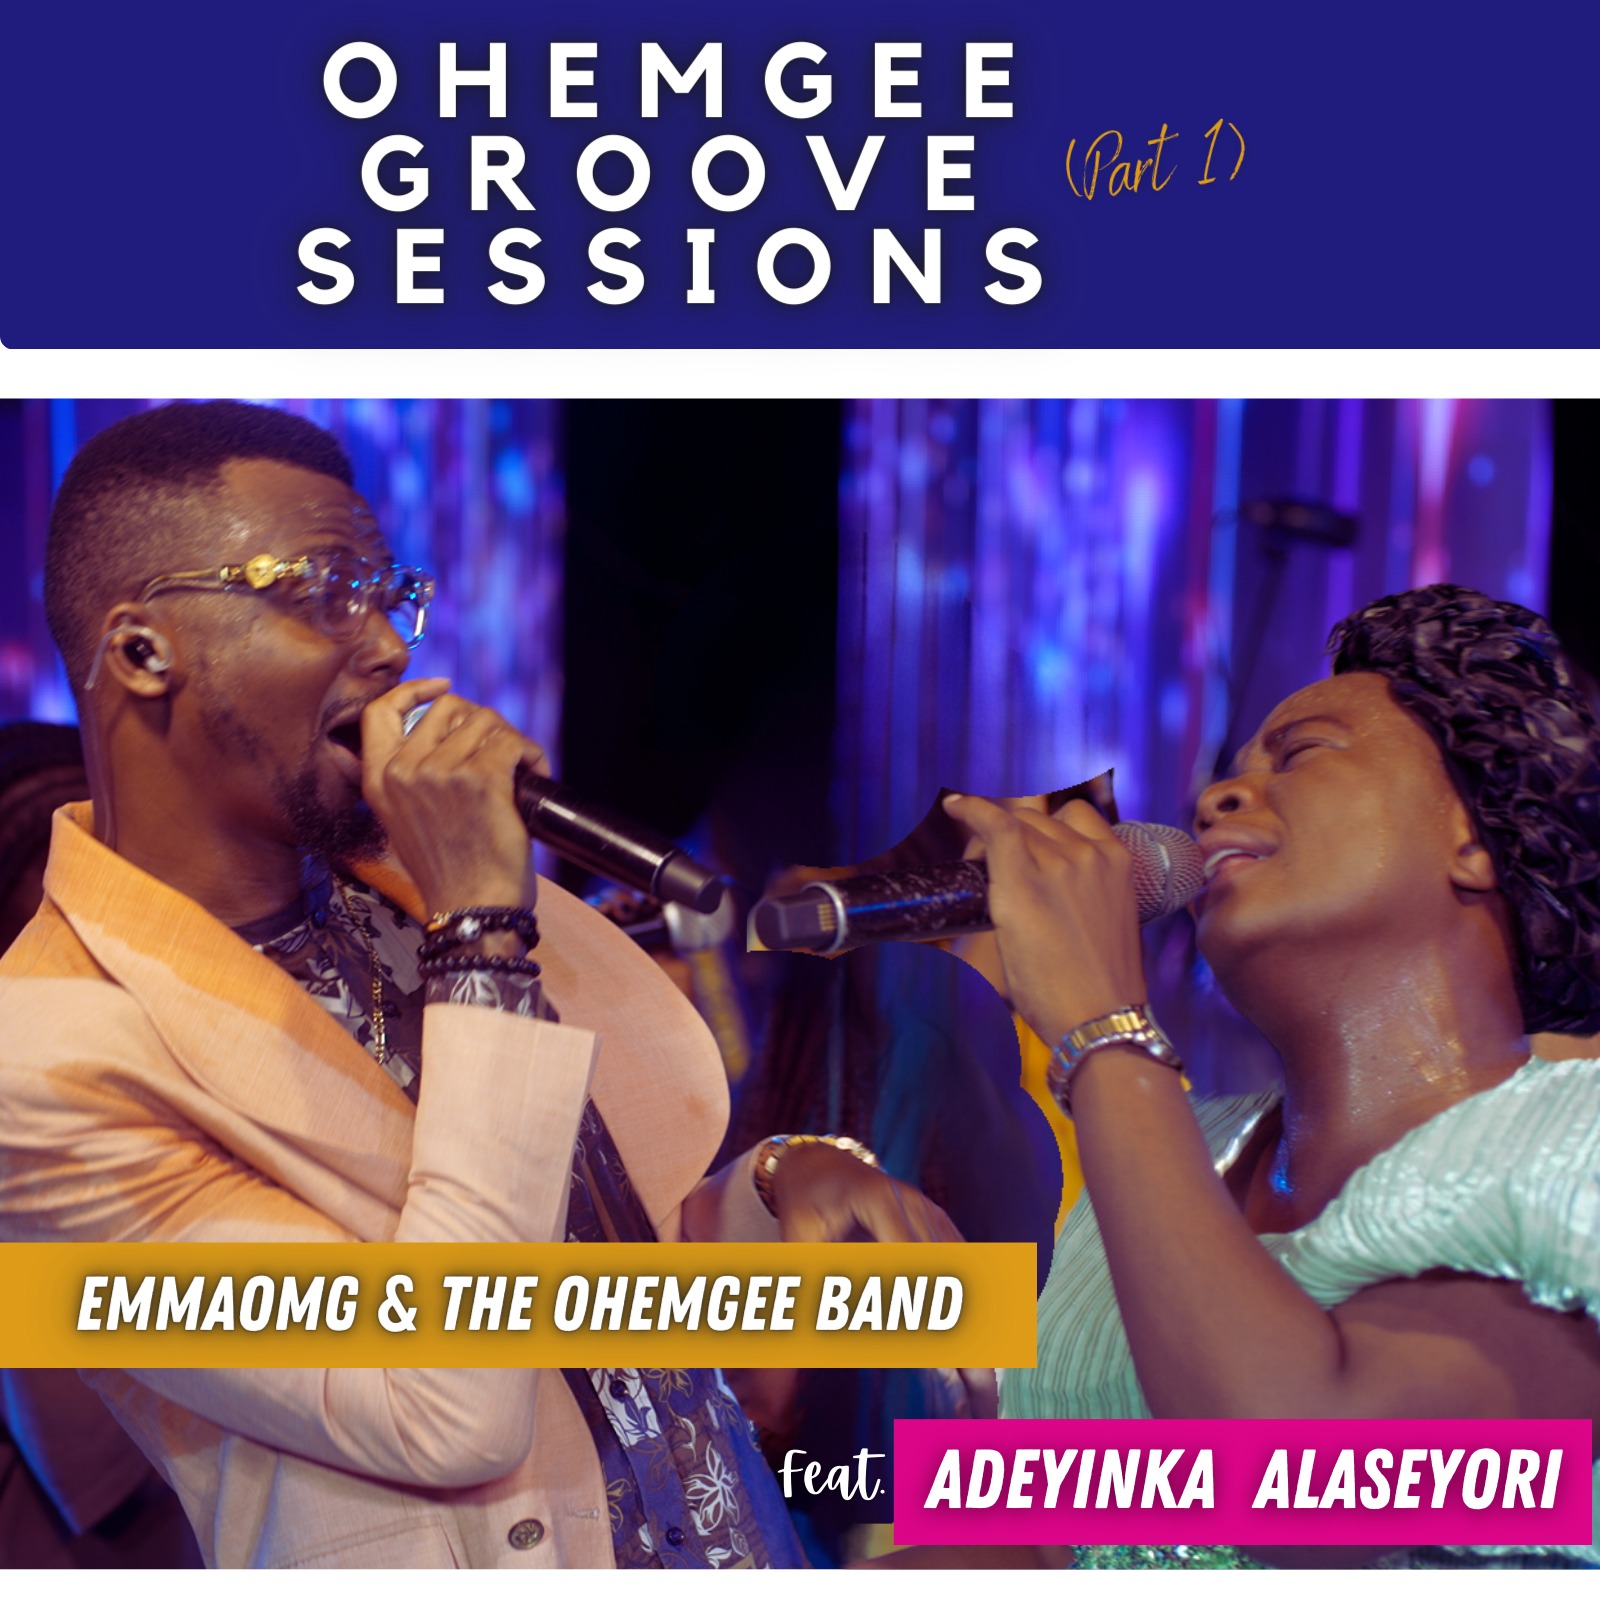 EmmaOMG The OhEmGee Band ft. Adeyinka Alaseyori OhEmGee Groove Sessions Part 1